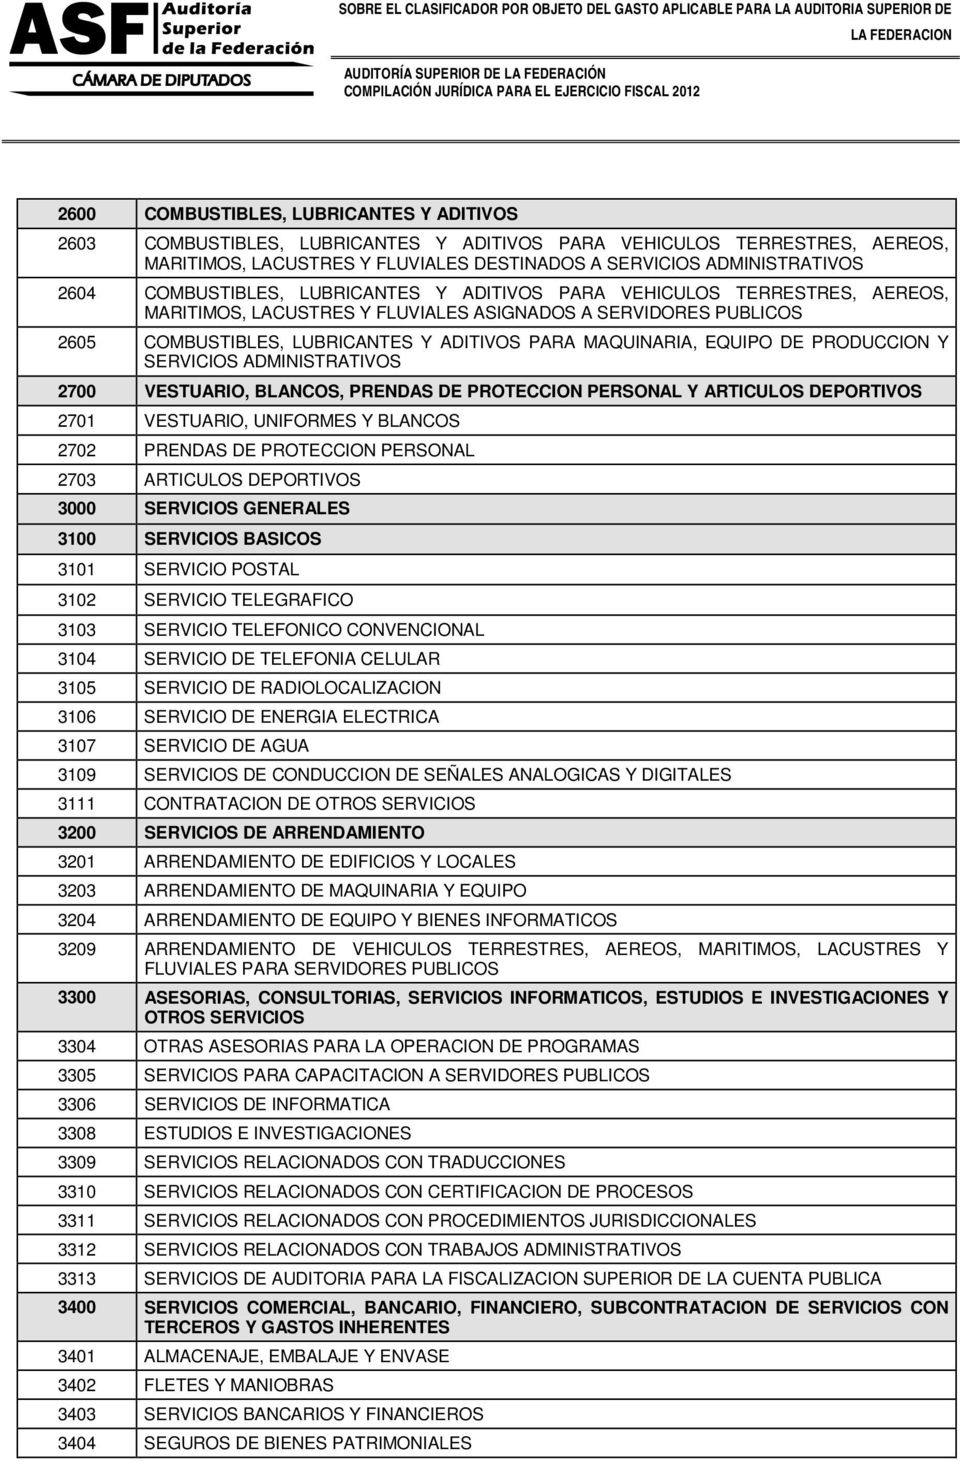 EQUIPO DE PRODUCCION Y SERVICIOS ADMINISTRATIVOS 2700 VESTUARIO, BLANCOS, PRENDAS DE PROTECCION PERSONAL Y ARTICULOS DEPORTIVOS 2701 VESTUARIO, UNIFORMES Y BLANCOS 2702 PRENDAS DE PROTECCION PERSONAL